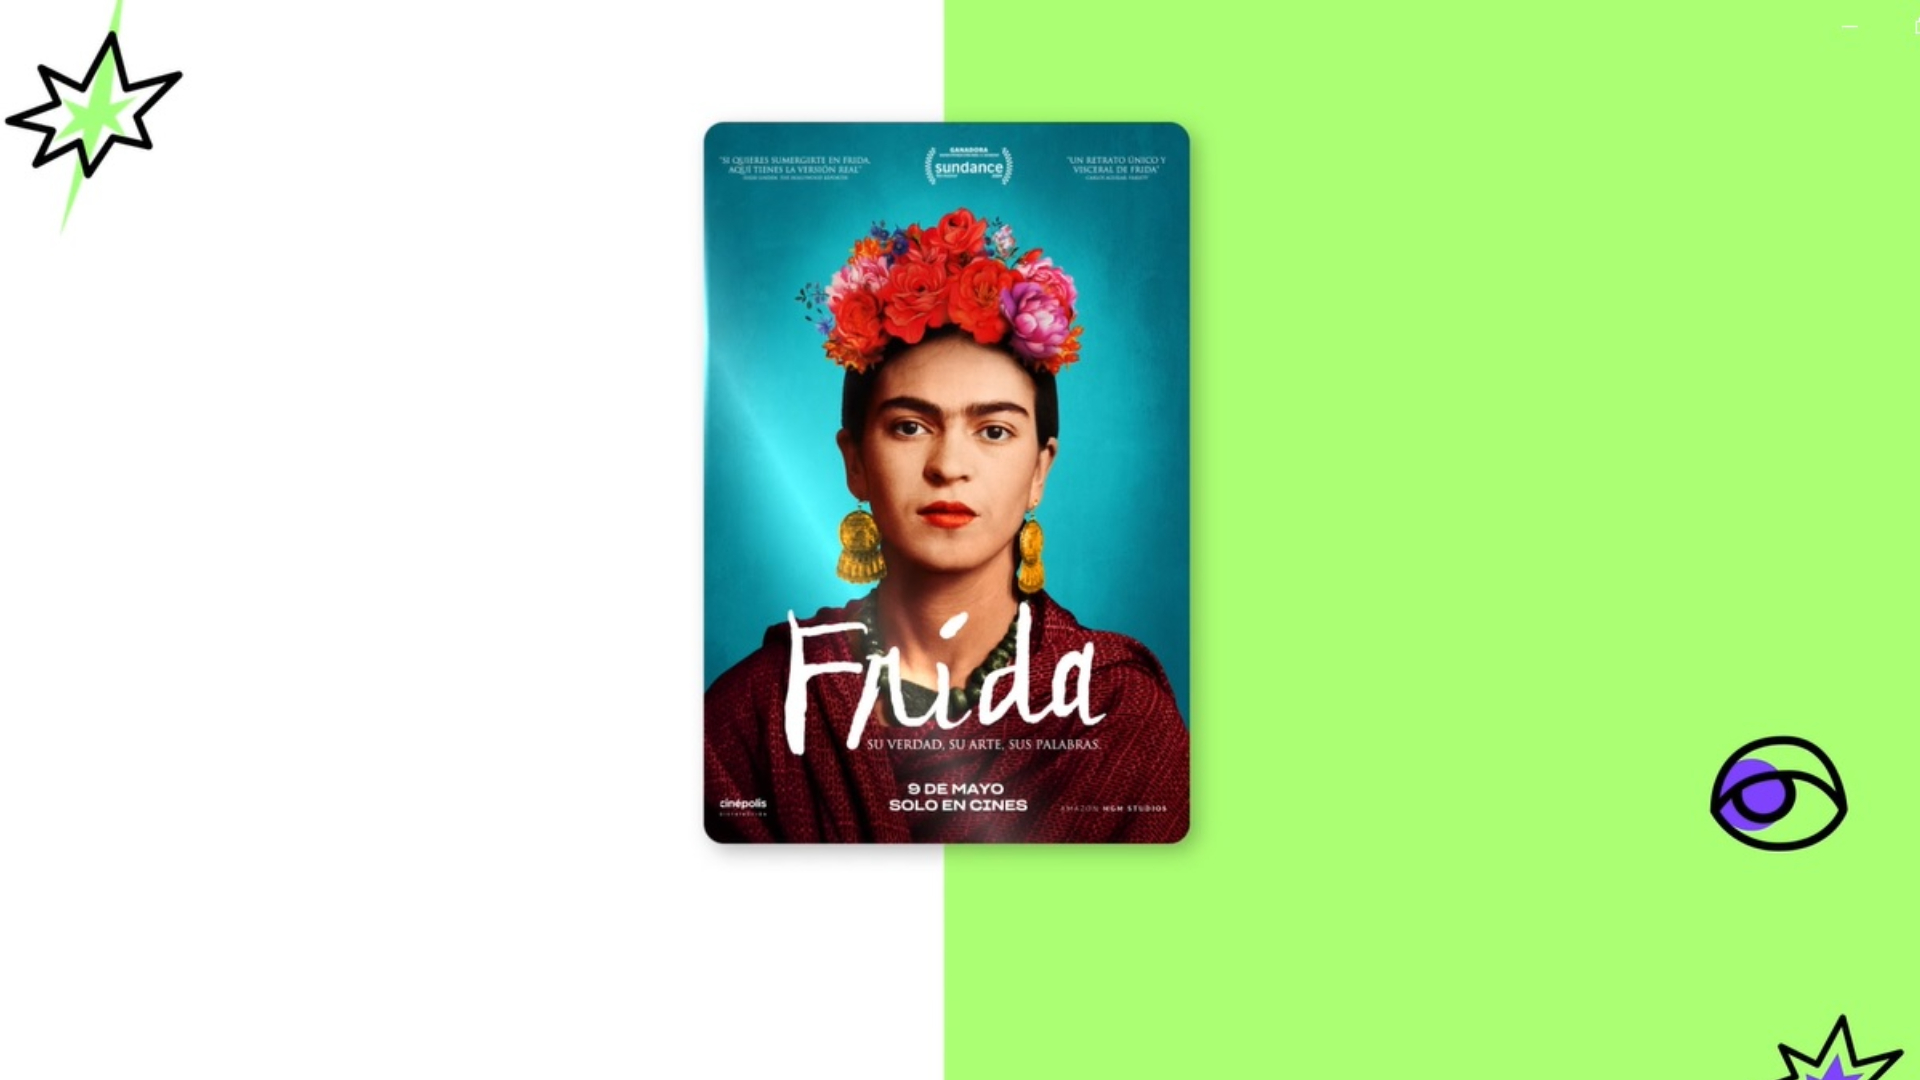 Frida Sundance Garantía Cinépolis